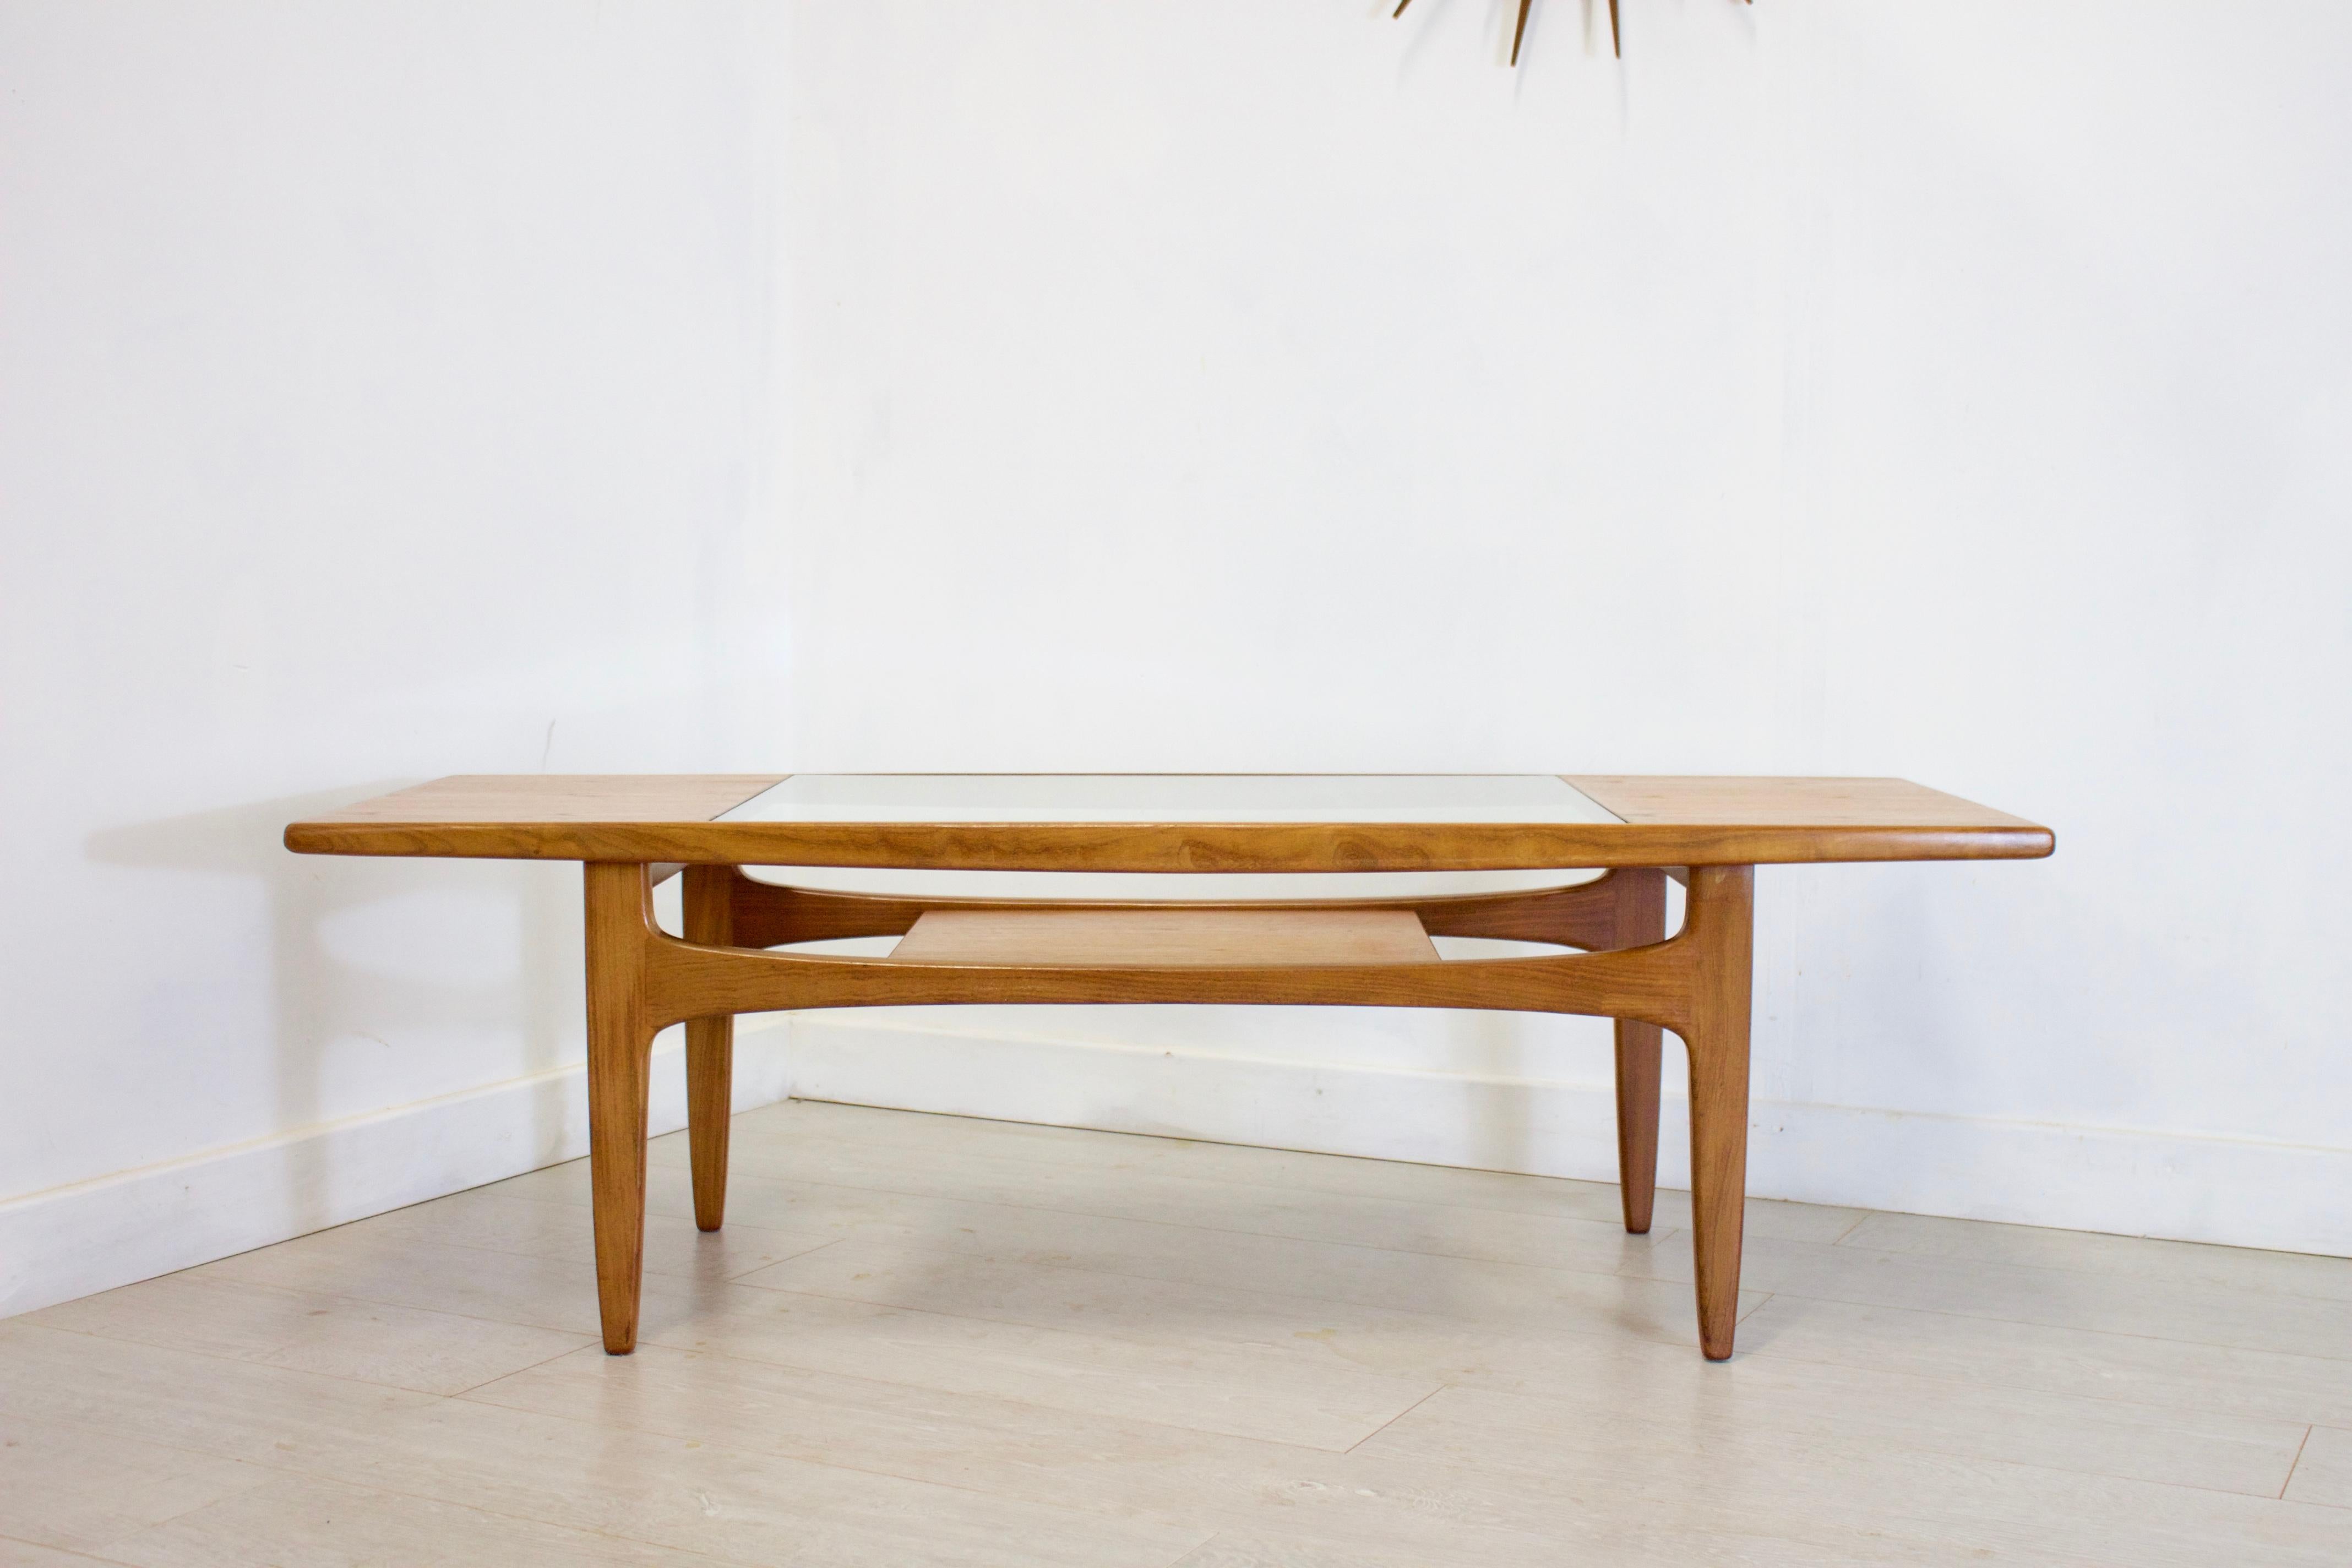 - Midcentury coffee table
- Designed by Victor Wilkins for G-Plan
- Made from teak and teak veneer.